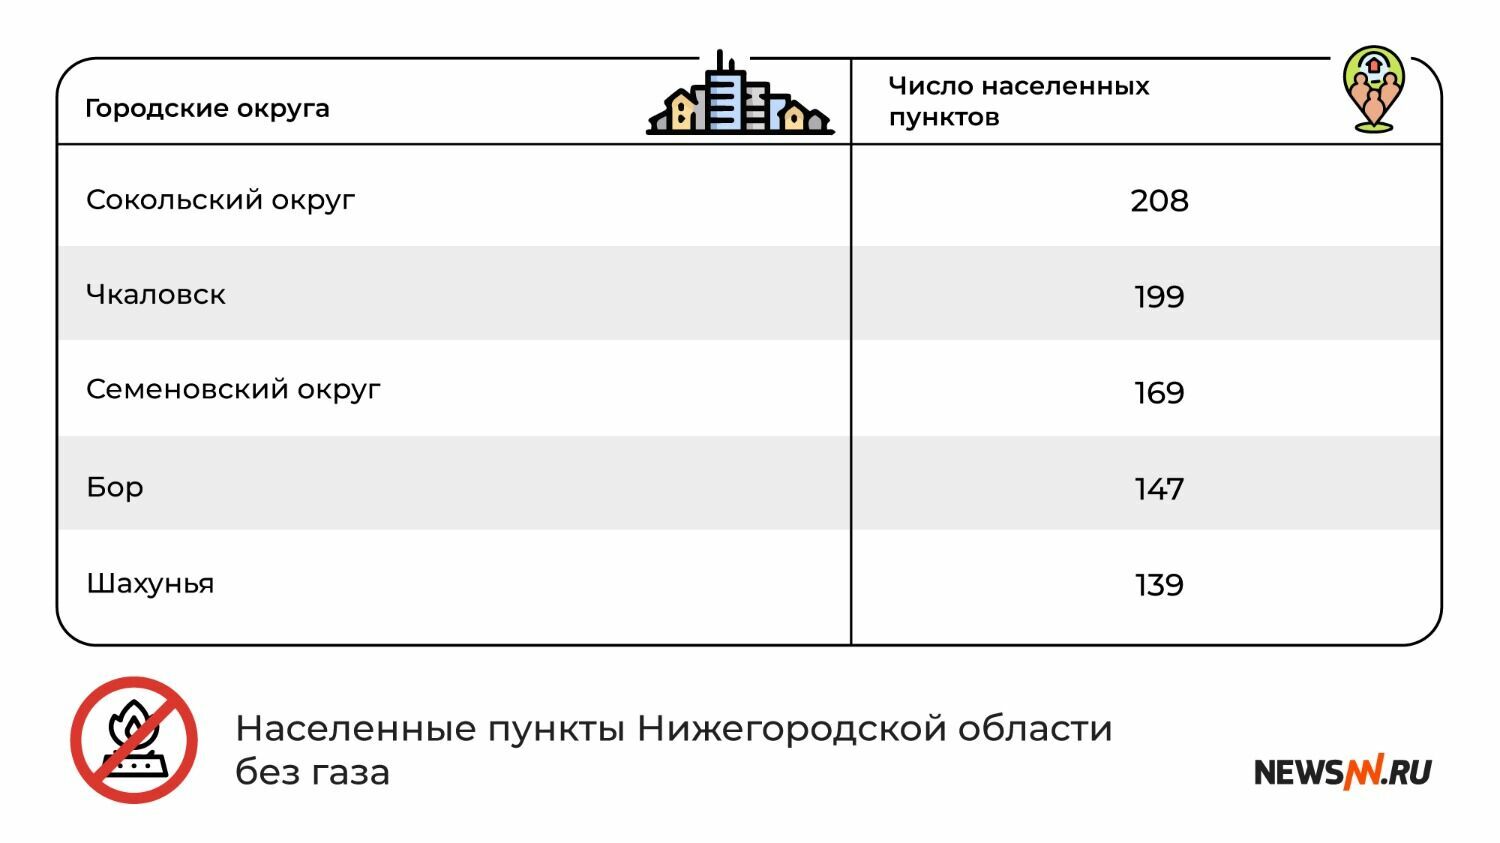 Городские округа Нижегородской области без газа